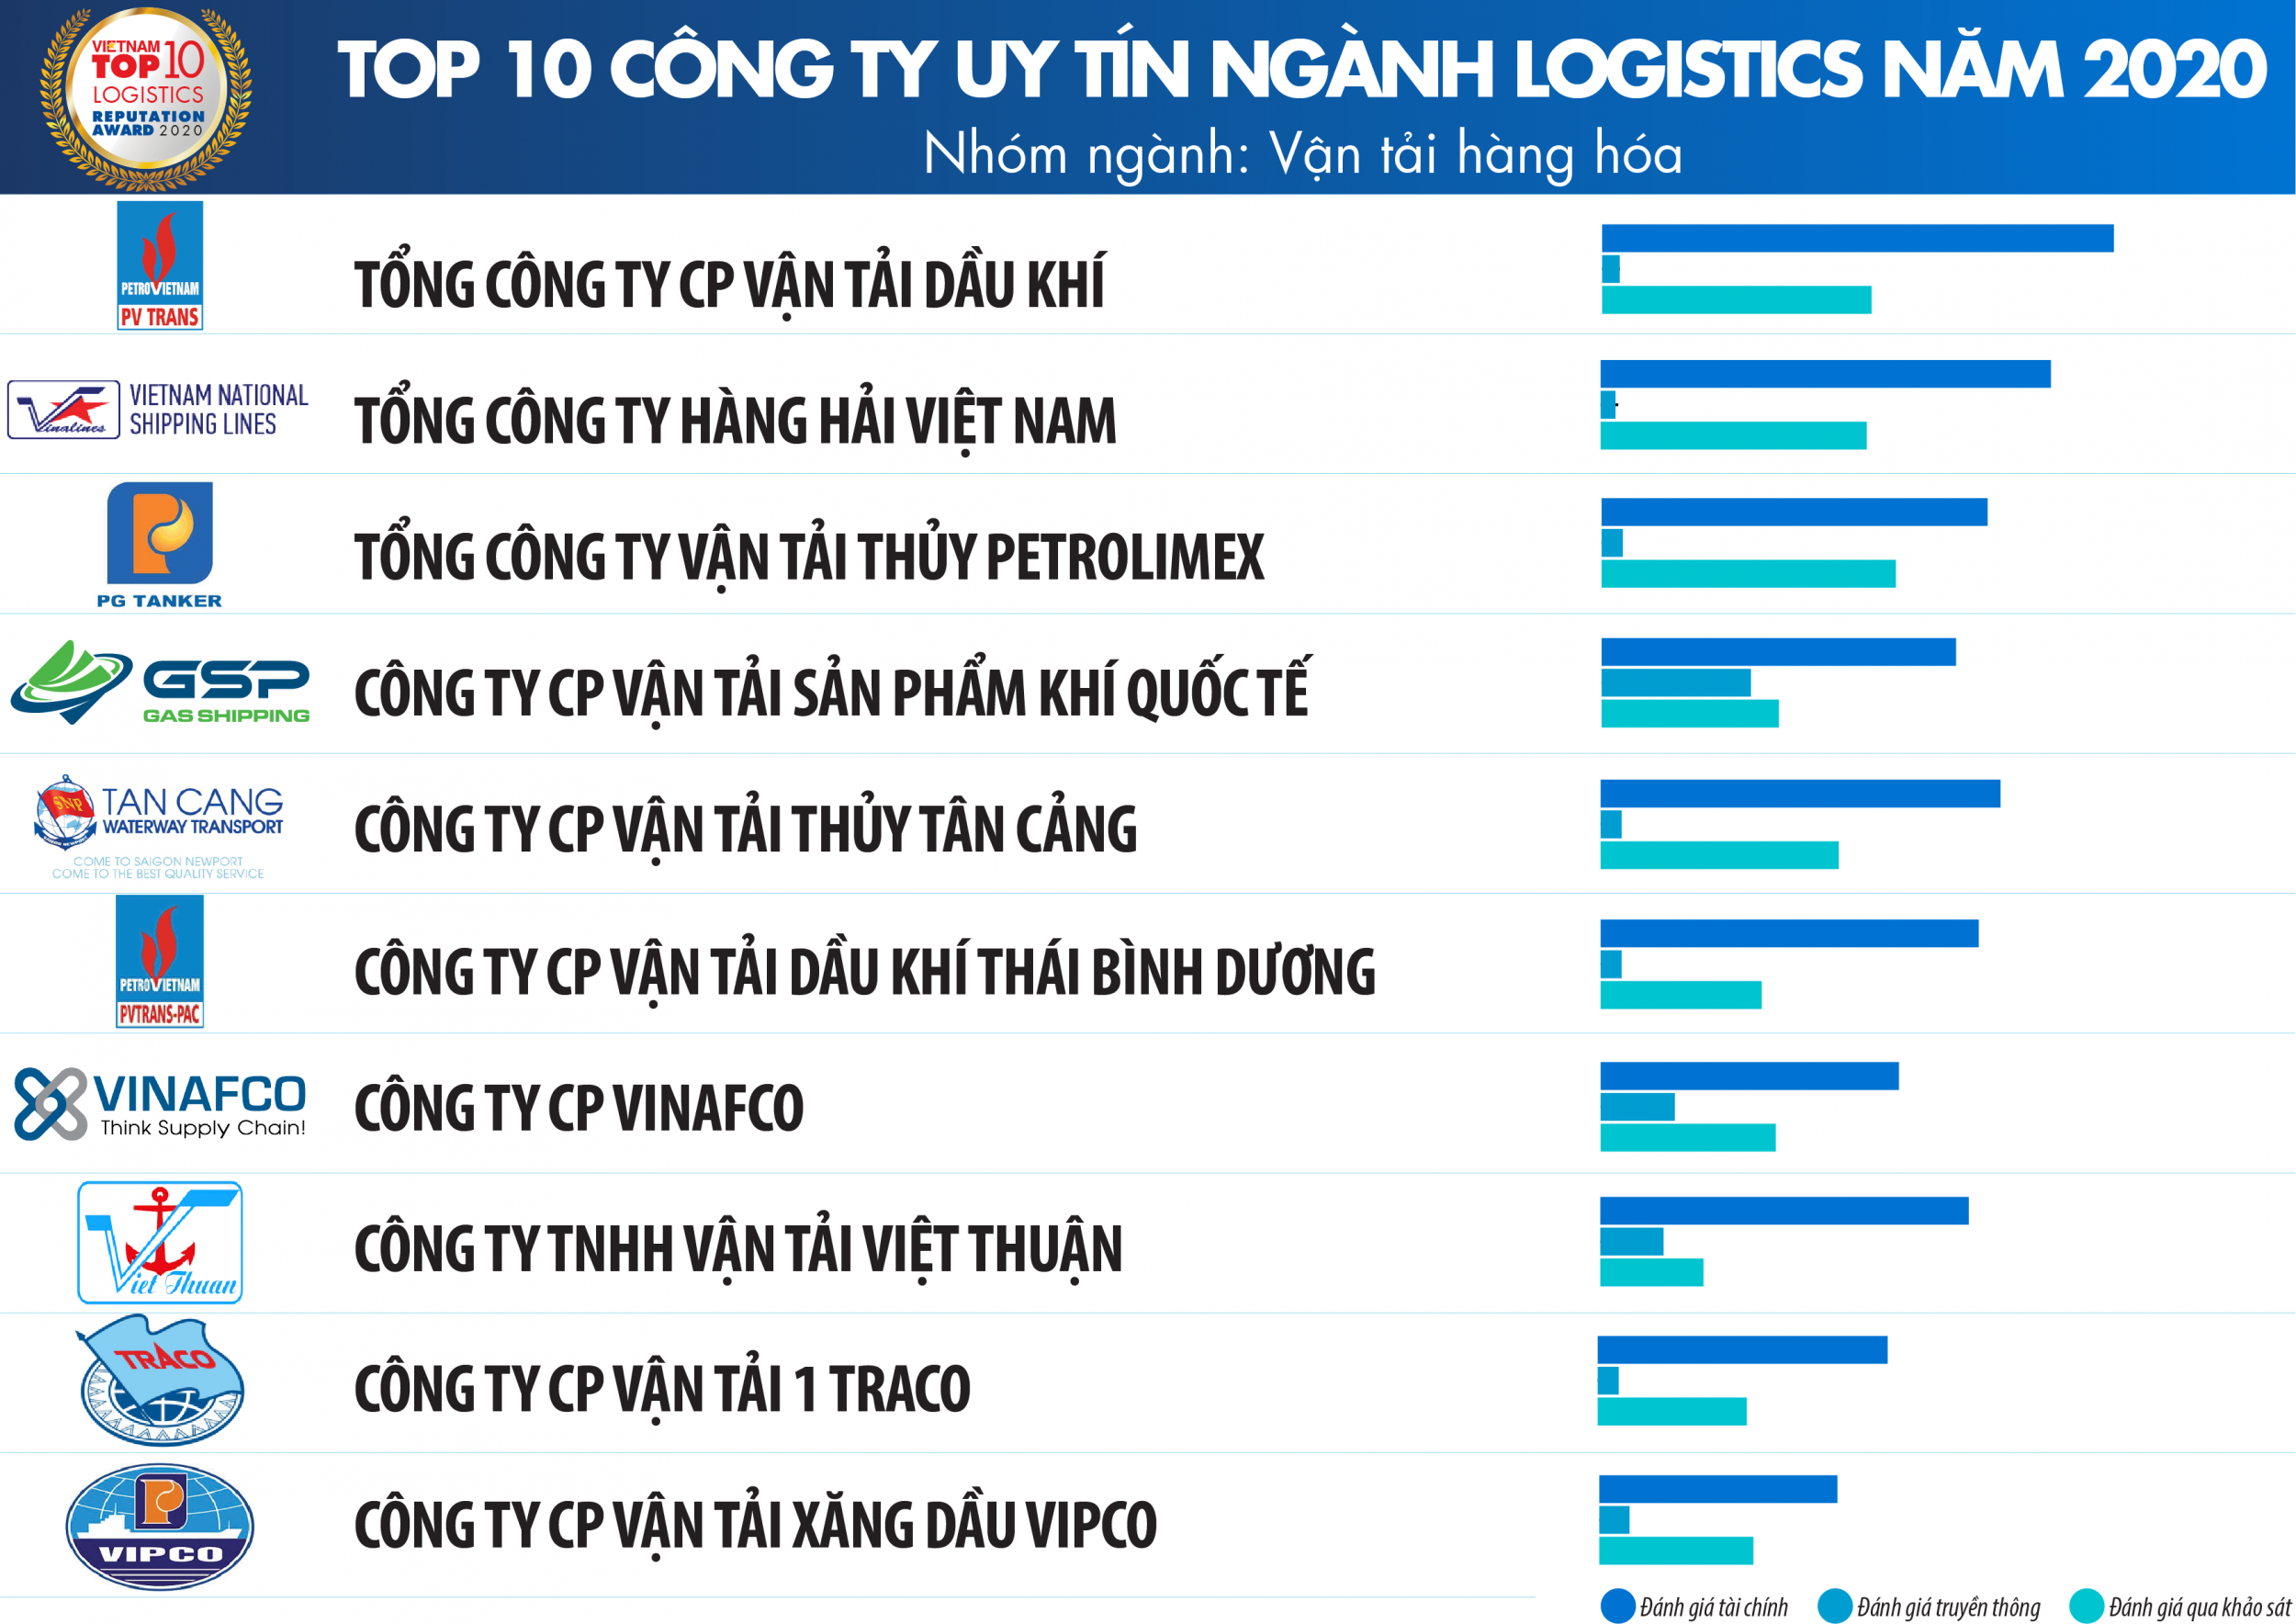 Top 10 Công ty uy tín ngành Logistics năm 2020 - Nhóm ngành: Vận tải hàng hóa